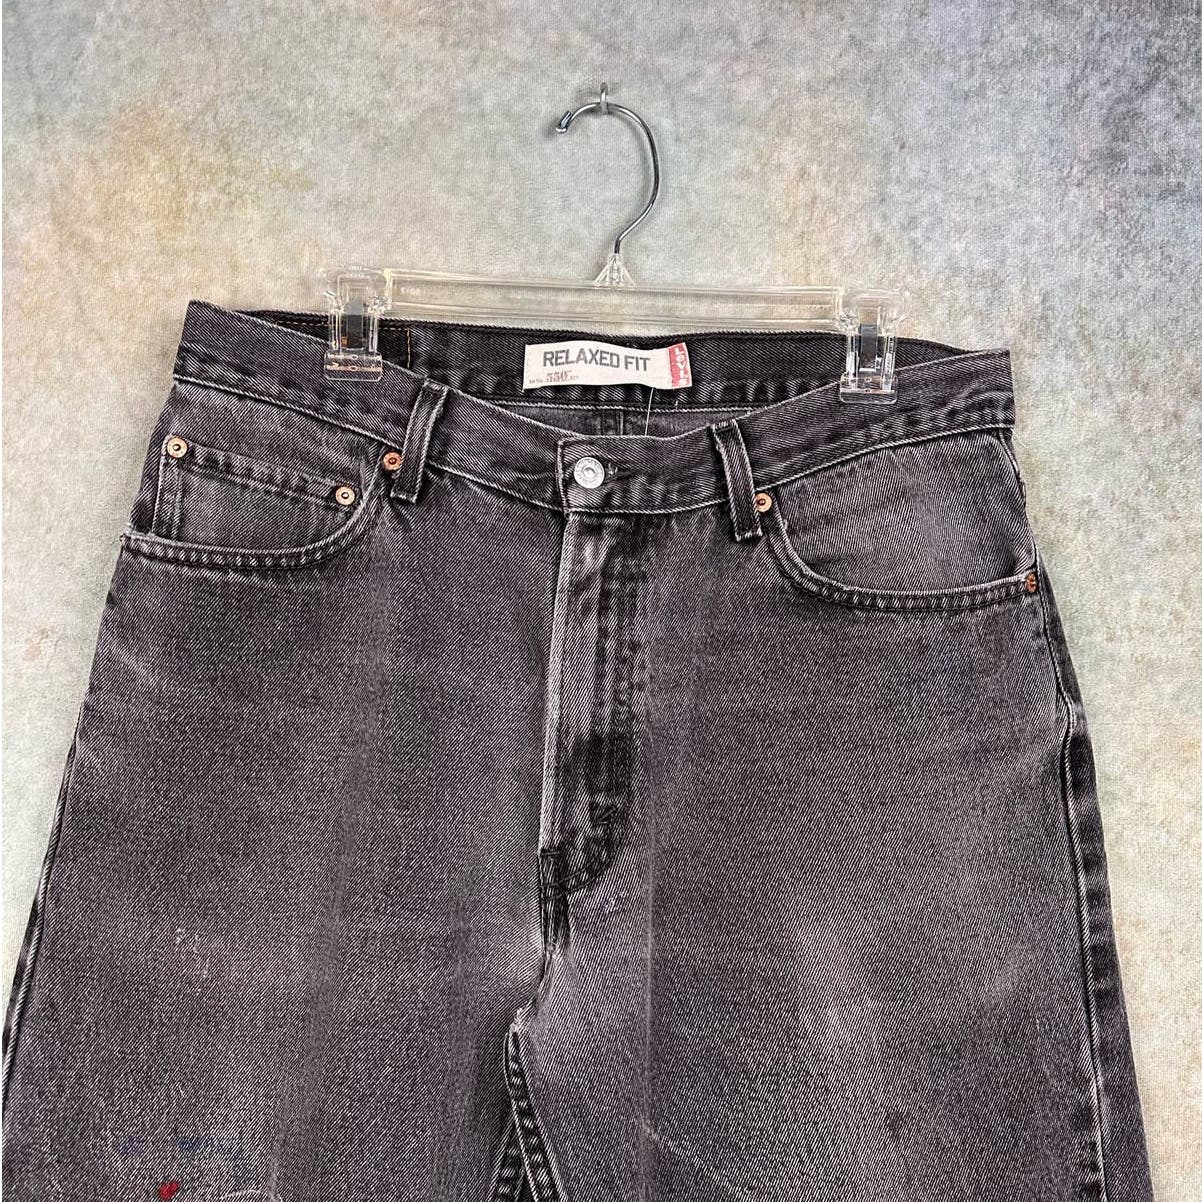 Vintage Levis 550 Denim Jeans Relaxed Fit 34x32